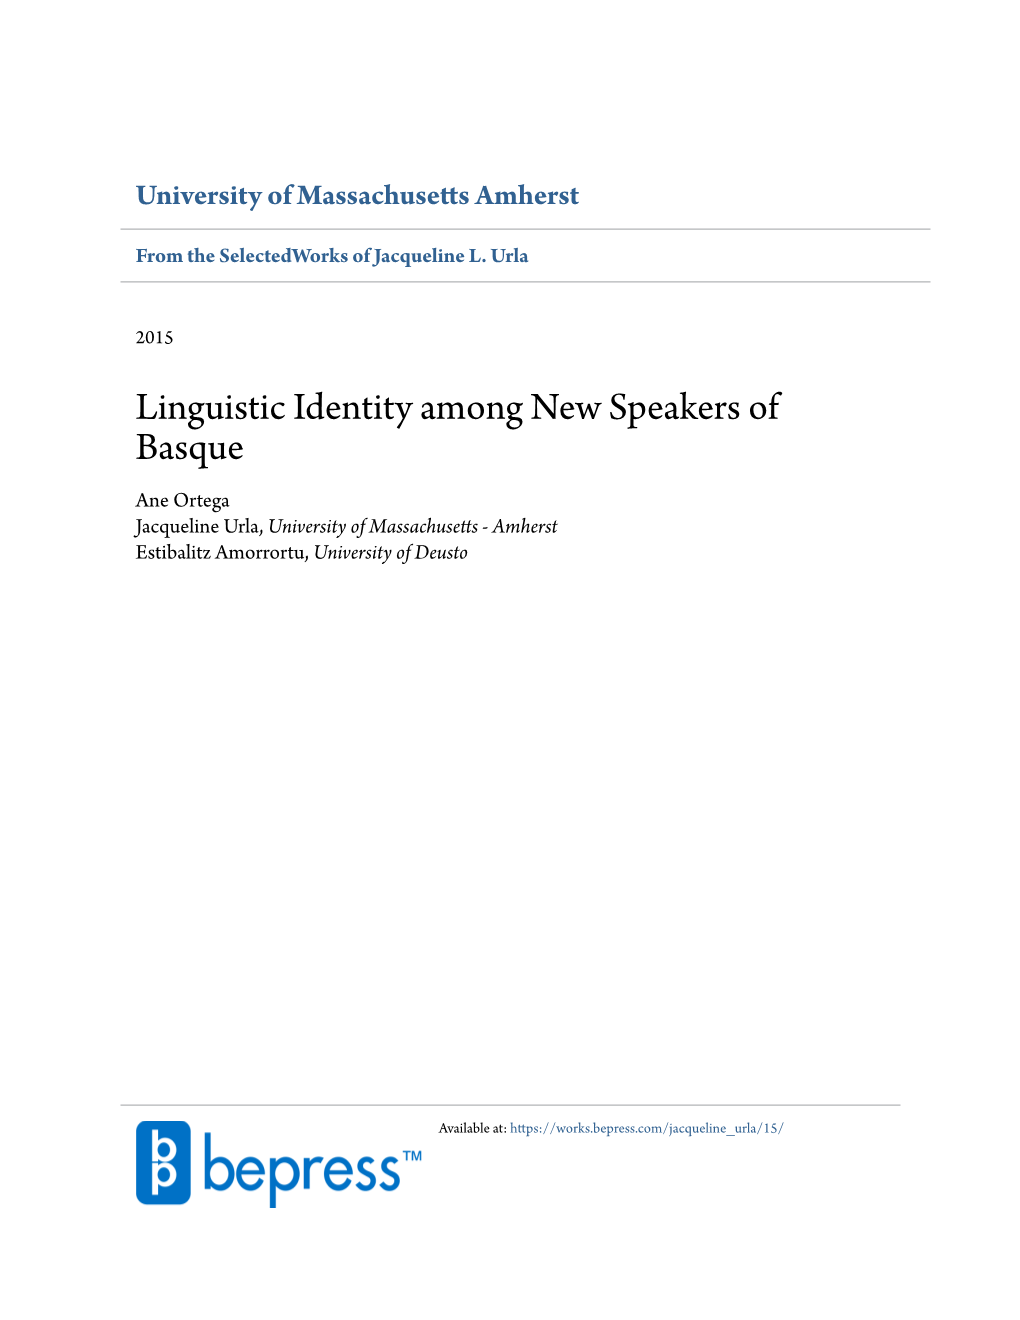 Linguistic Identity Among New Speakers of Basque Ane Ortega Jacqueline Urla, University of Massachusetts - Amherst Estibalitz Amorrortu, University of Deusto